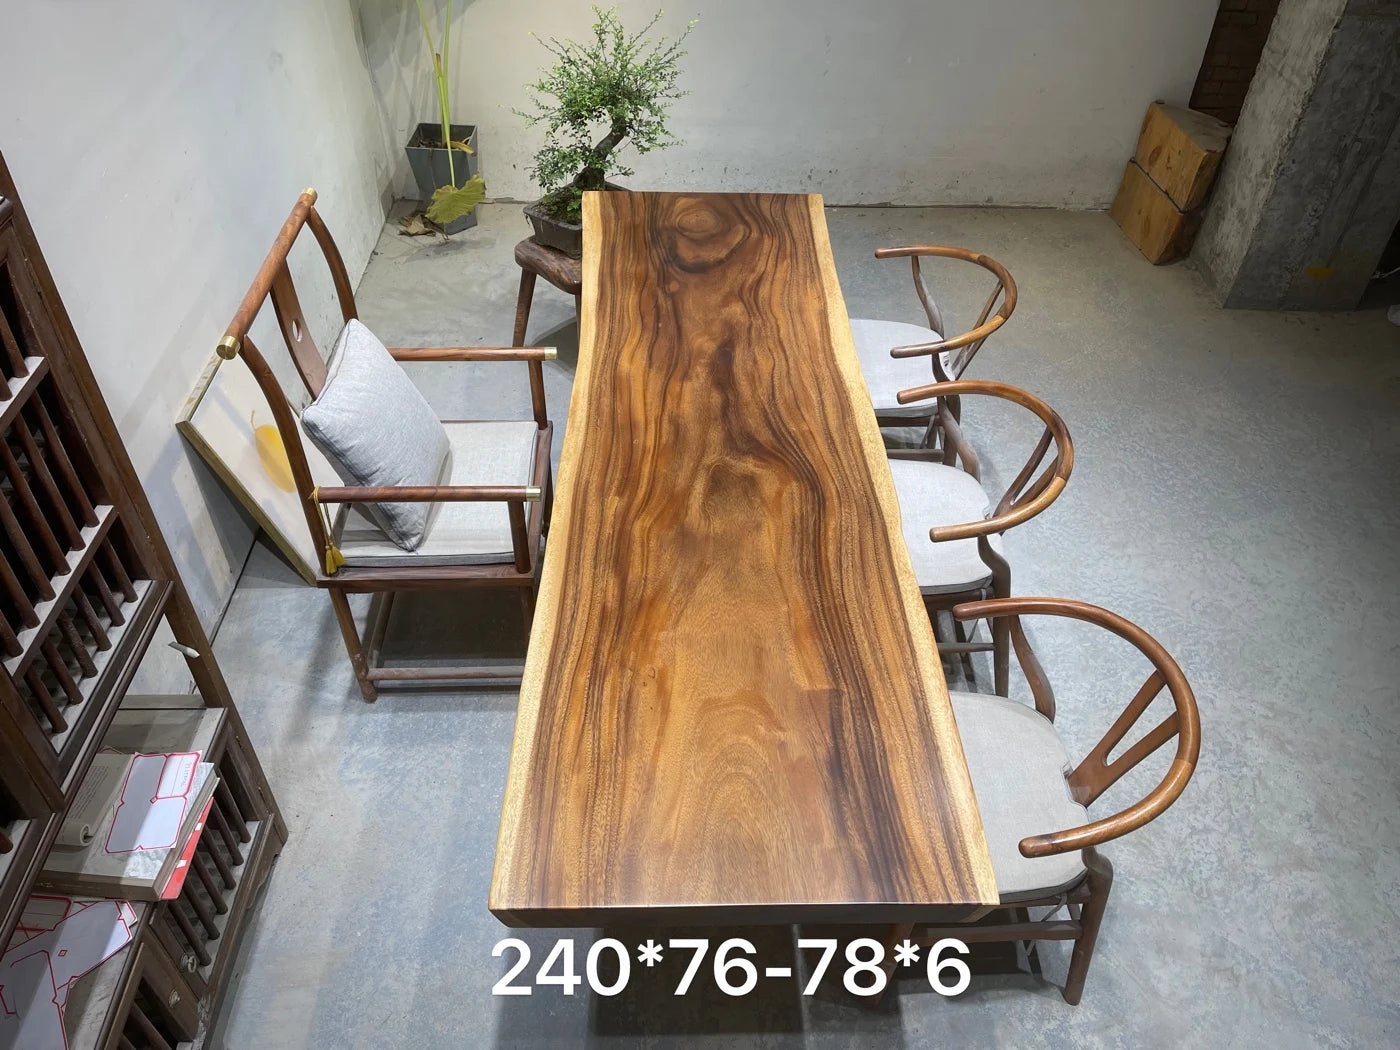 Trebord Fjellglans - Luxury Nordic Walnut Wood Dining Table